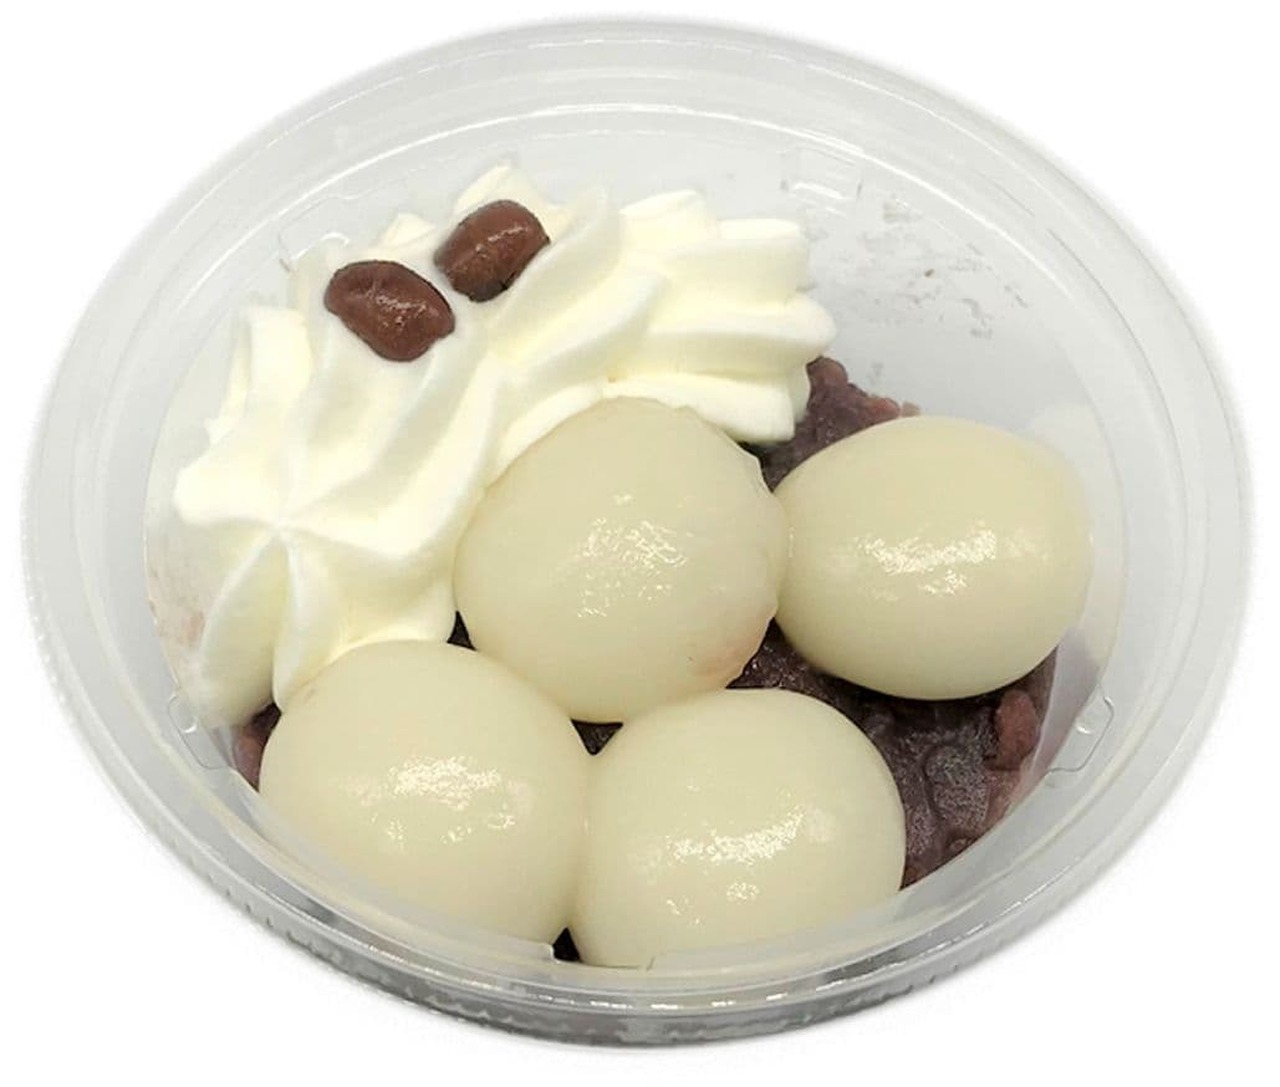 7-ELEVEN "Mochiri Shiratama Cream Zenzai"